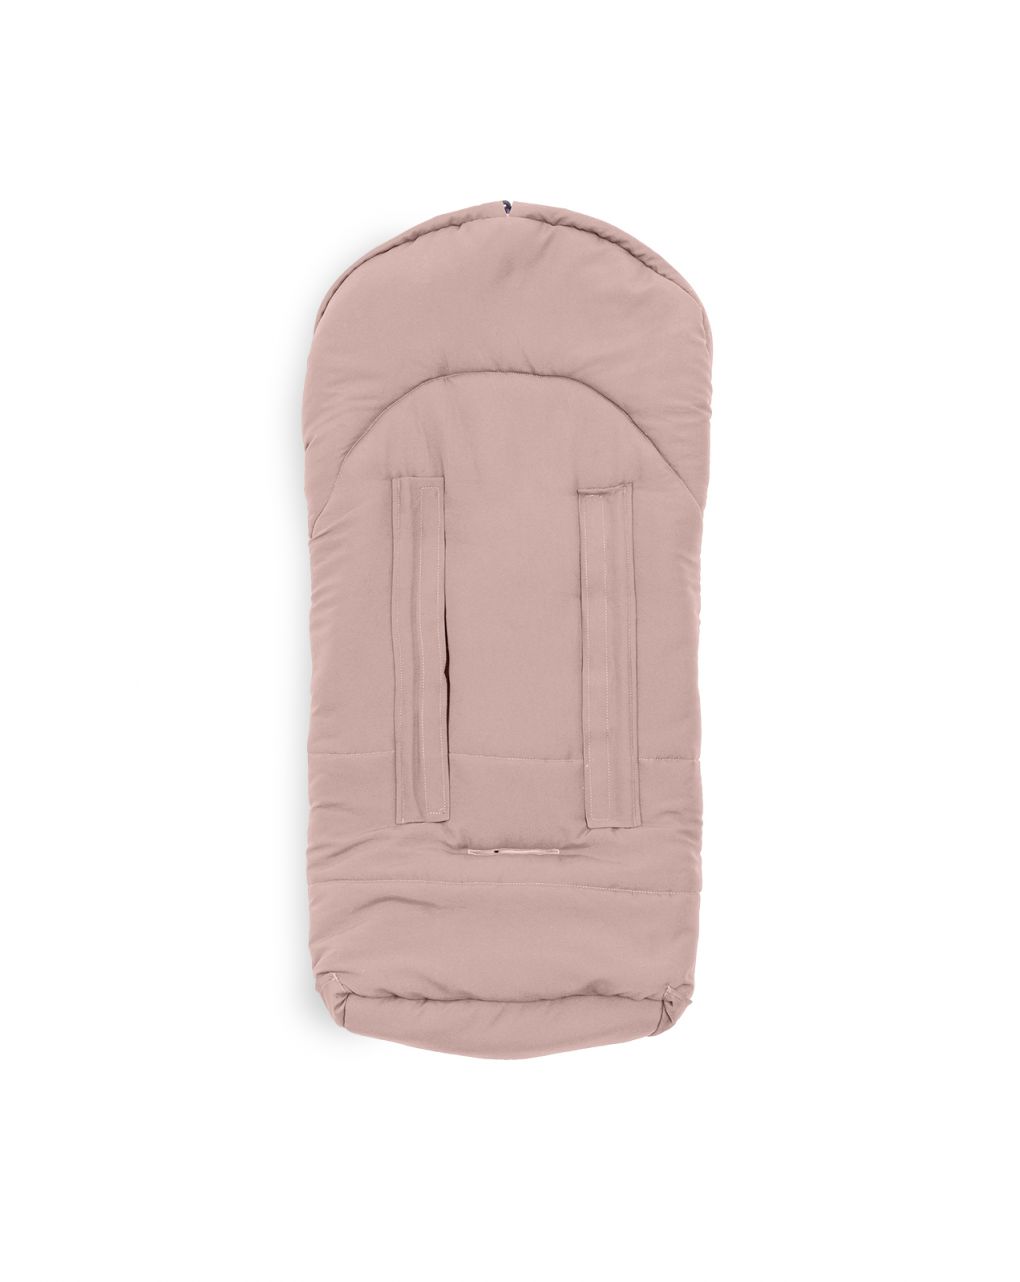 Moovo ovetto city rosa tenue - sacco universale 0-6 mesi per seggiolini auto gruppo 0+ - nuvita - Nuvita